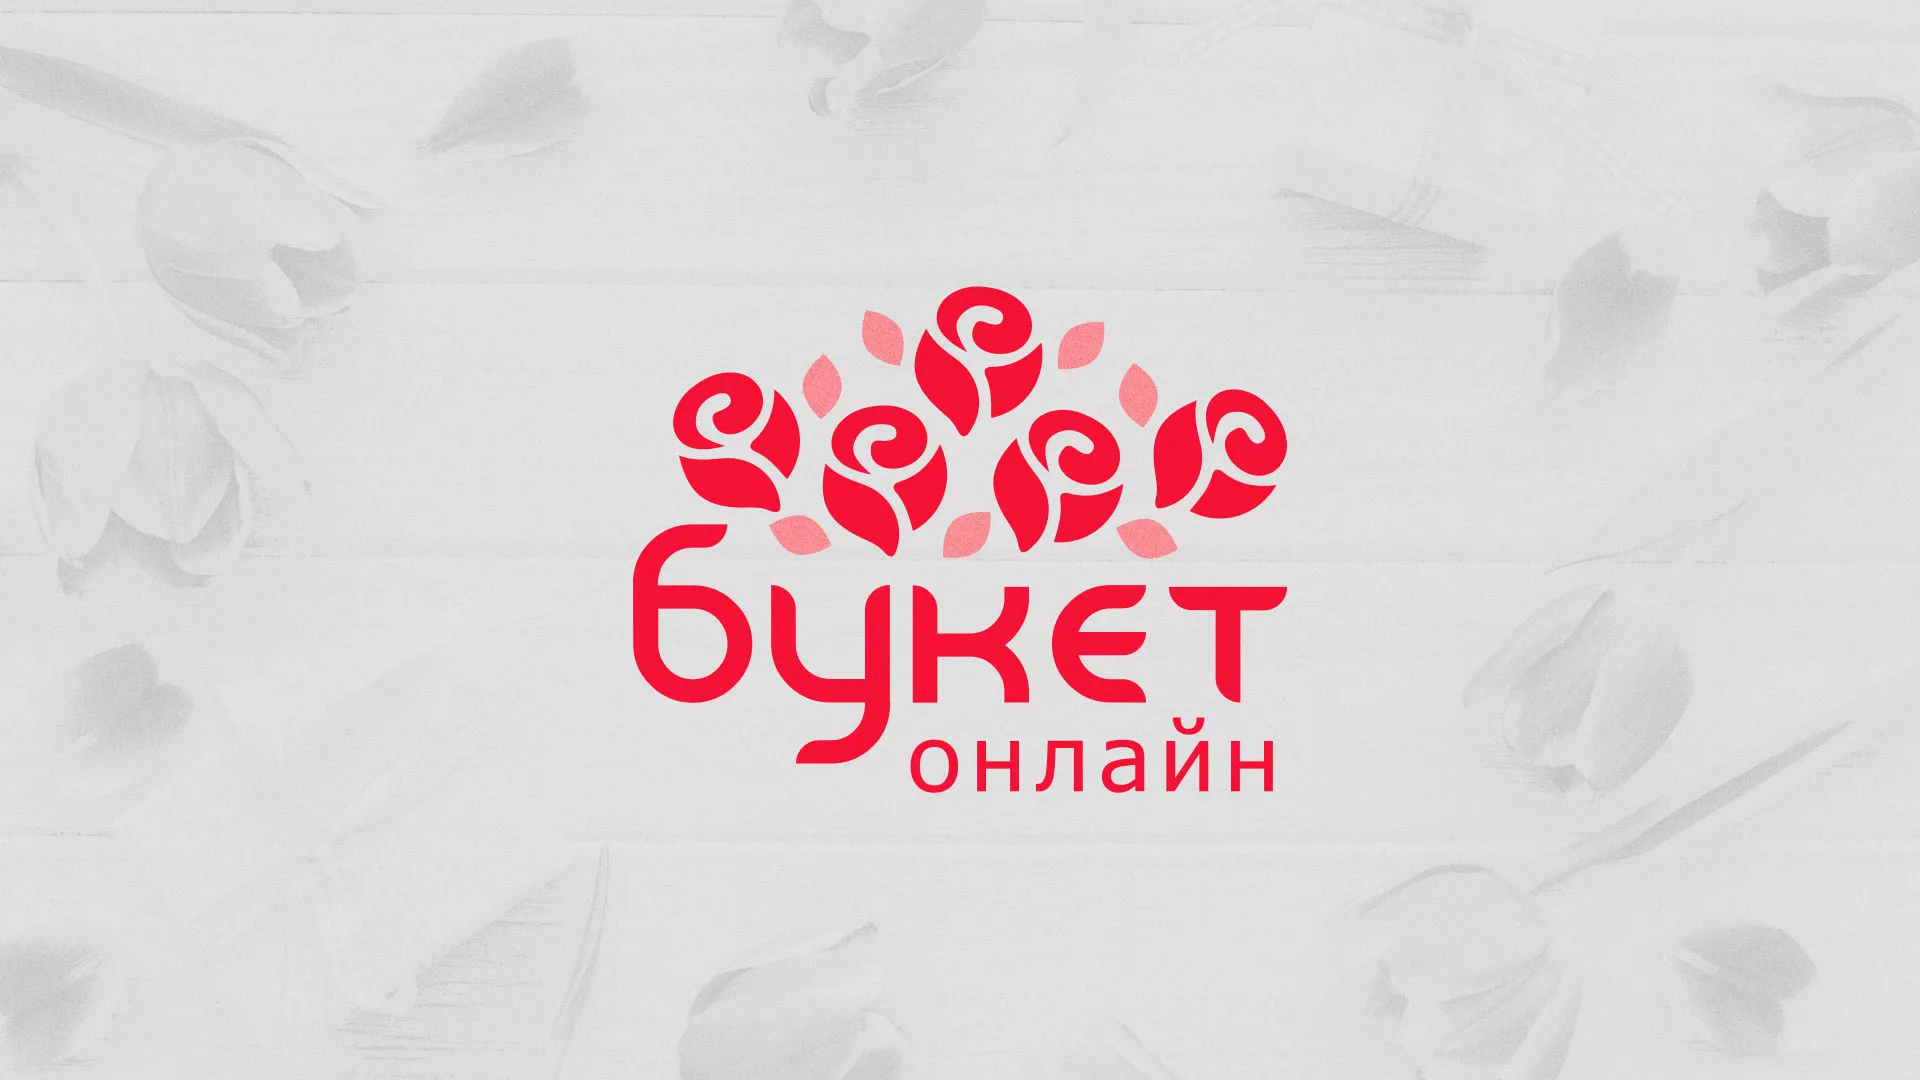 Создание интернет-магазина «Букет-онлайн» по цветам в Бийске